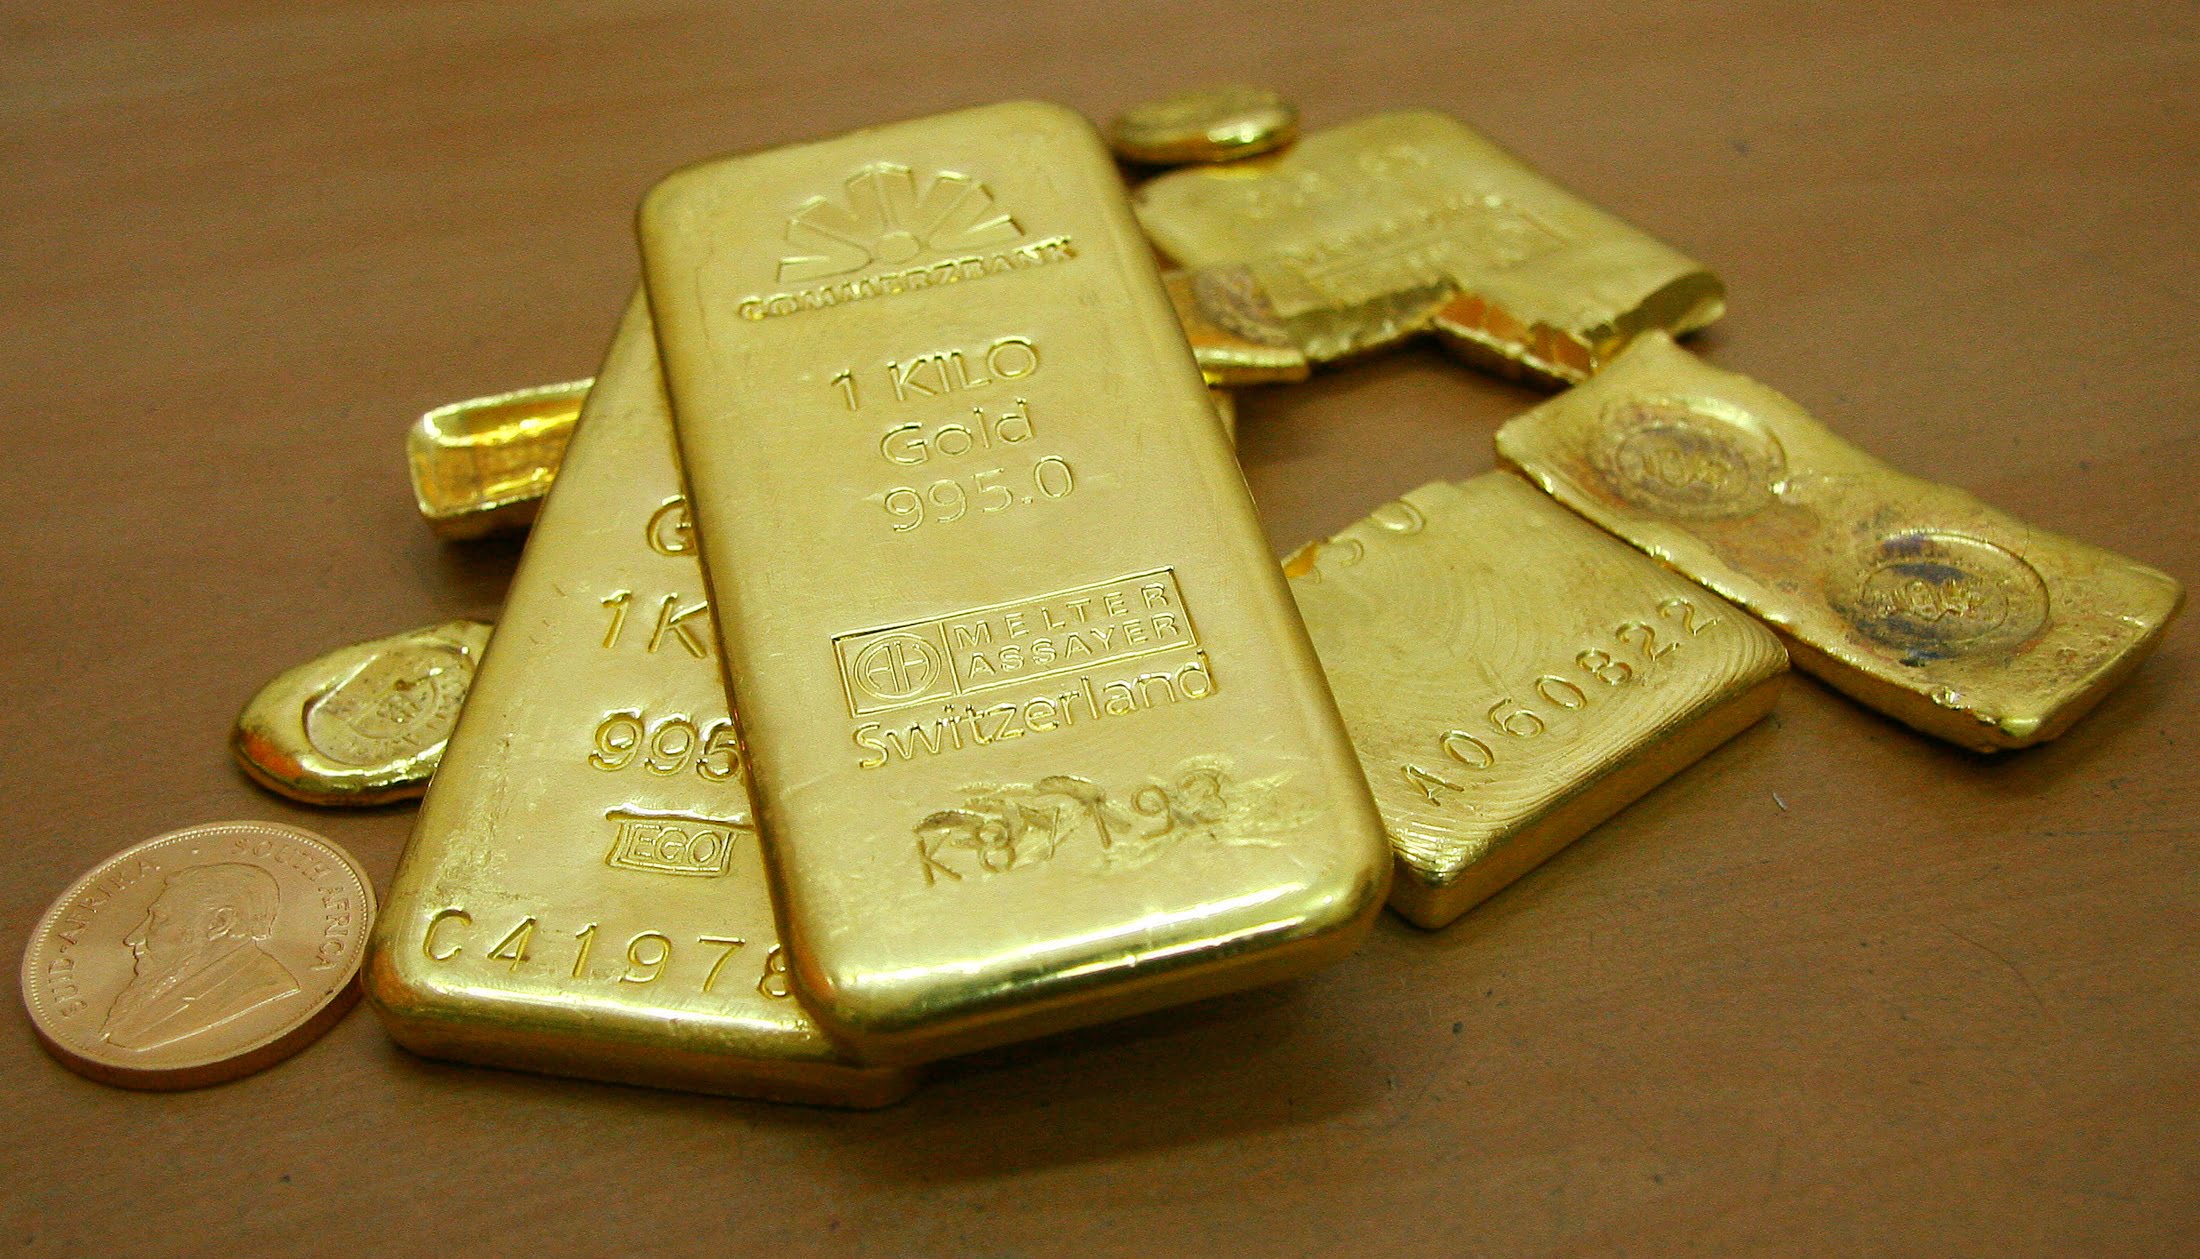 منتظر رکودهای بعدی قیمت طلا باشیم؟